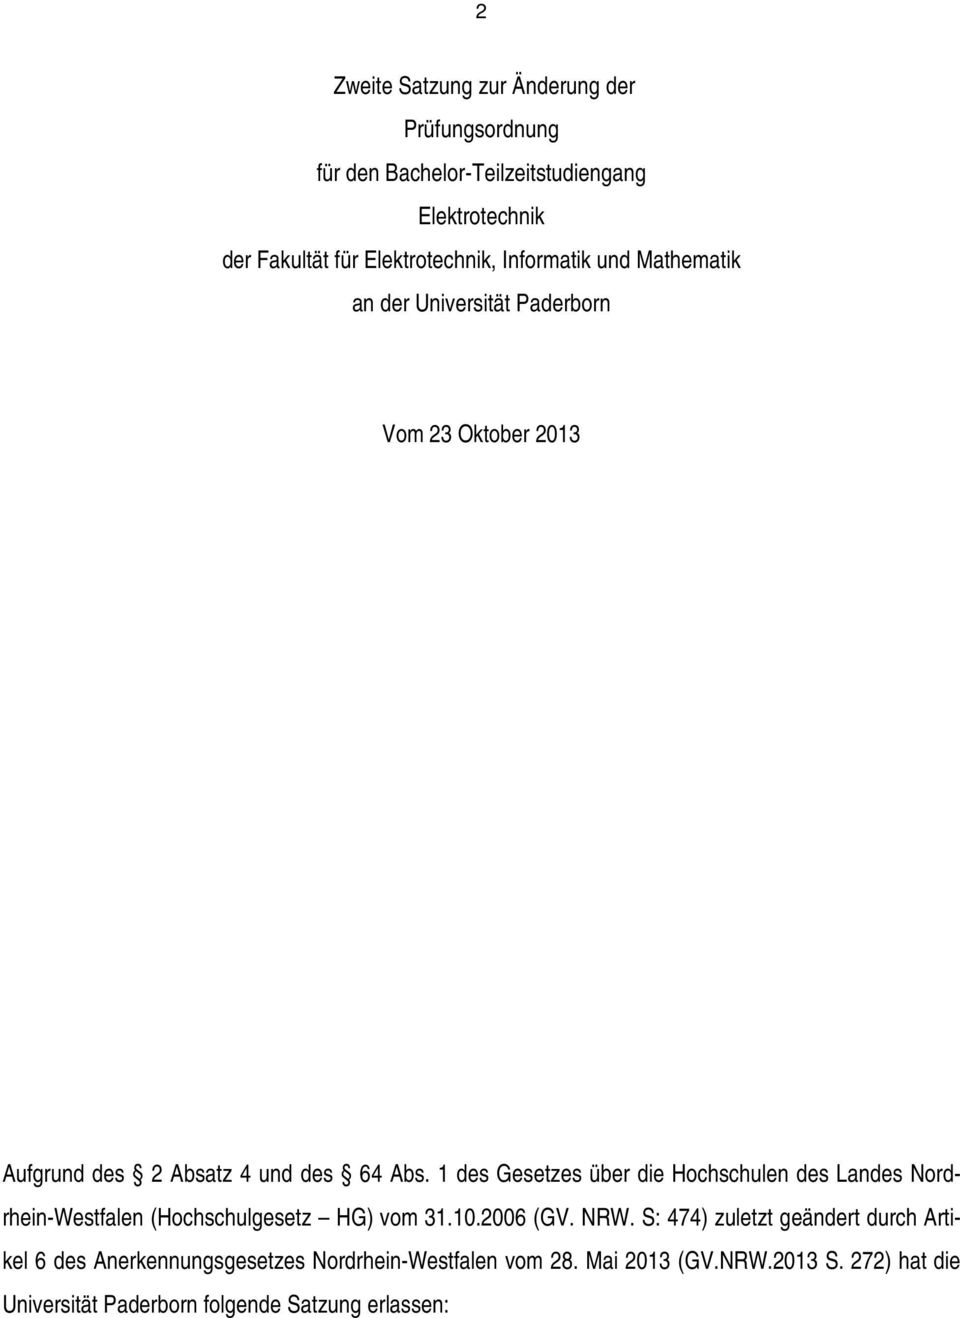 1 des Gesetzes über die Hochschulen des Landes Nordrhein-Westfalen (Hochschulgesetz HG) vom 31.10.2006 (GV. NRW.